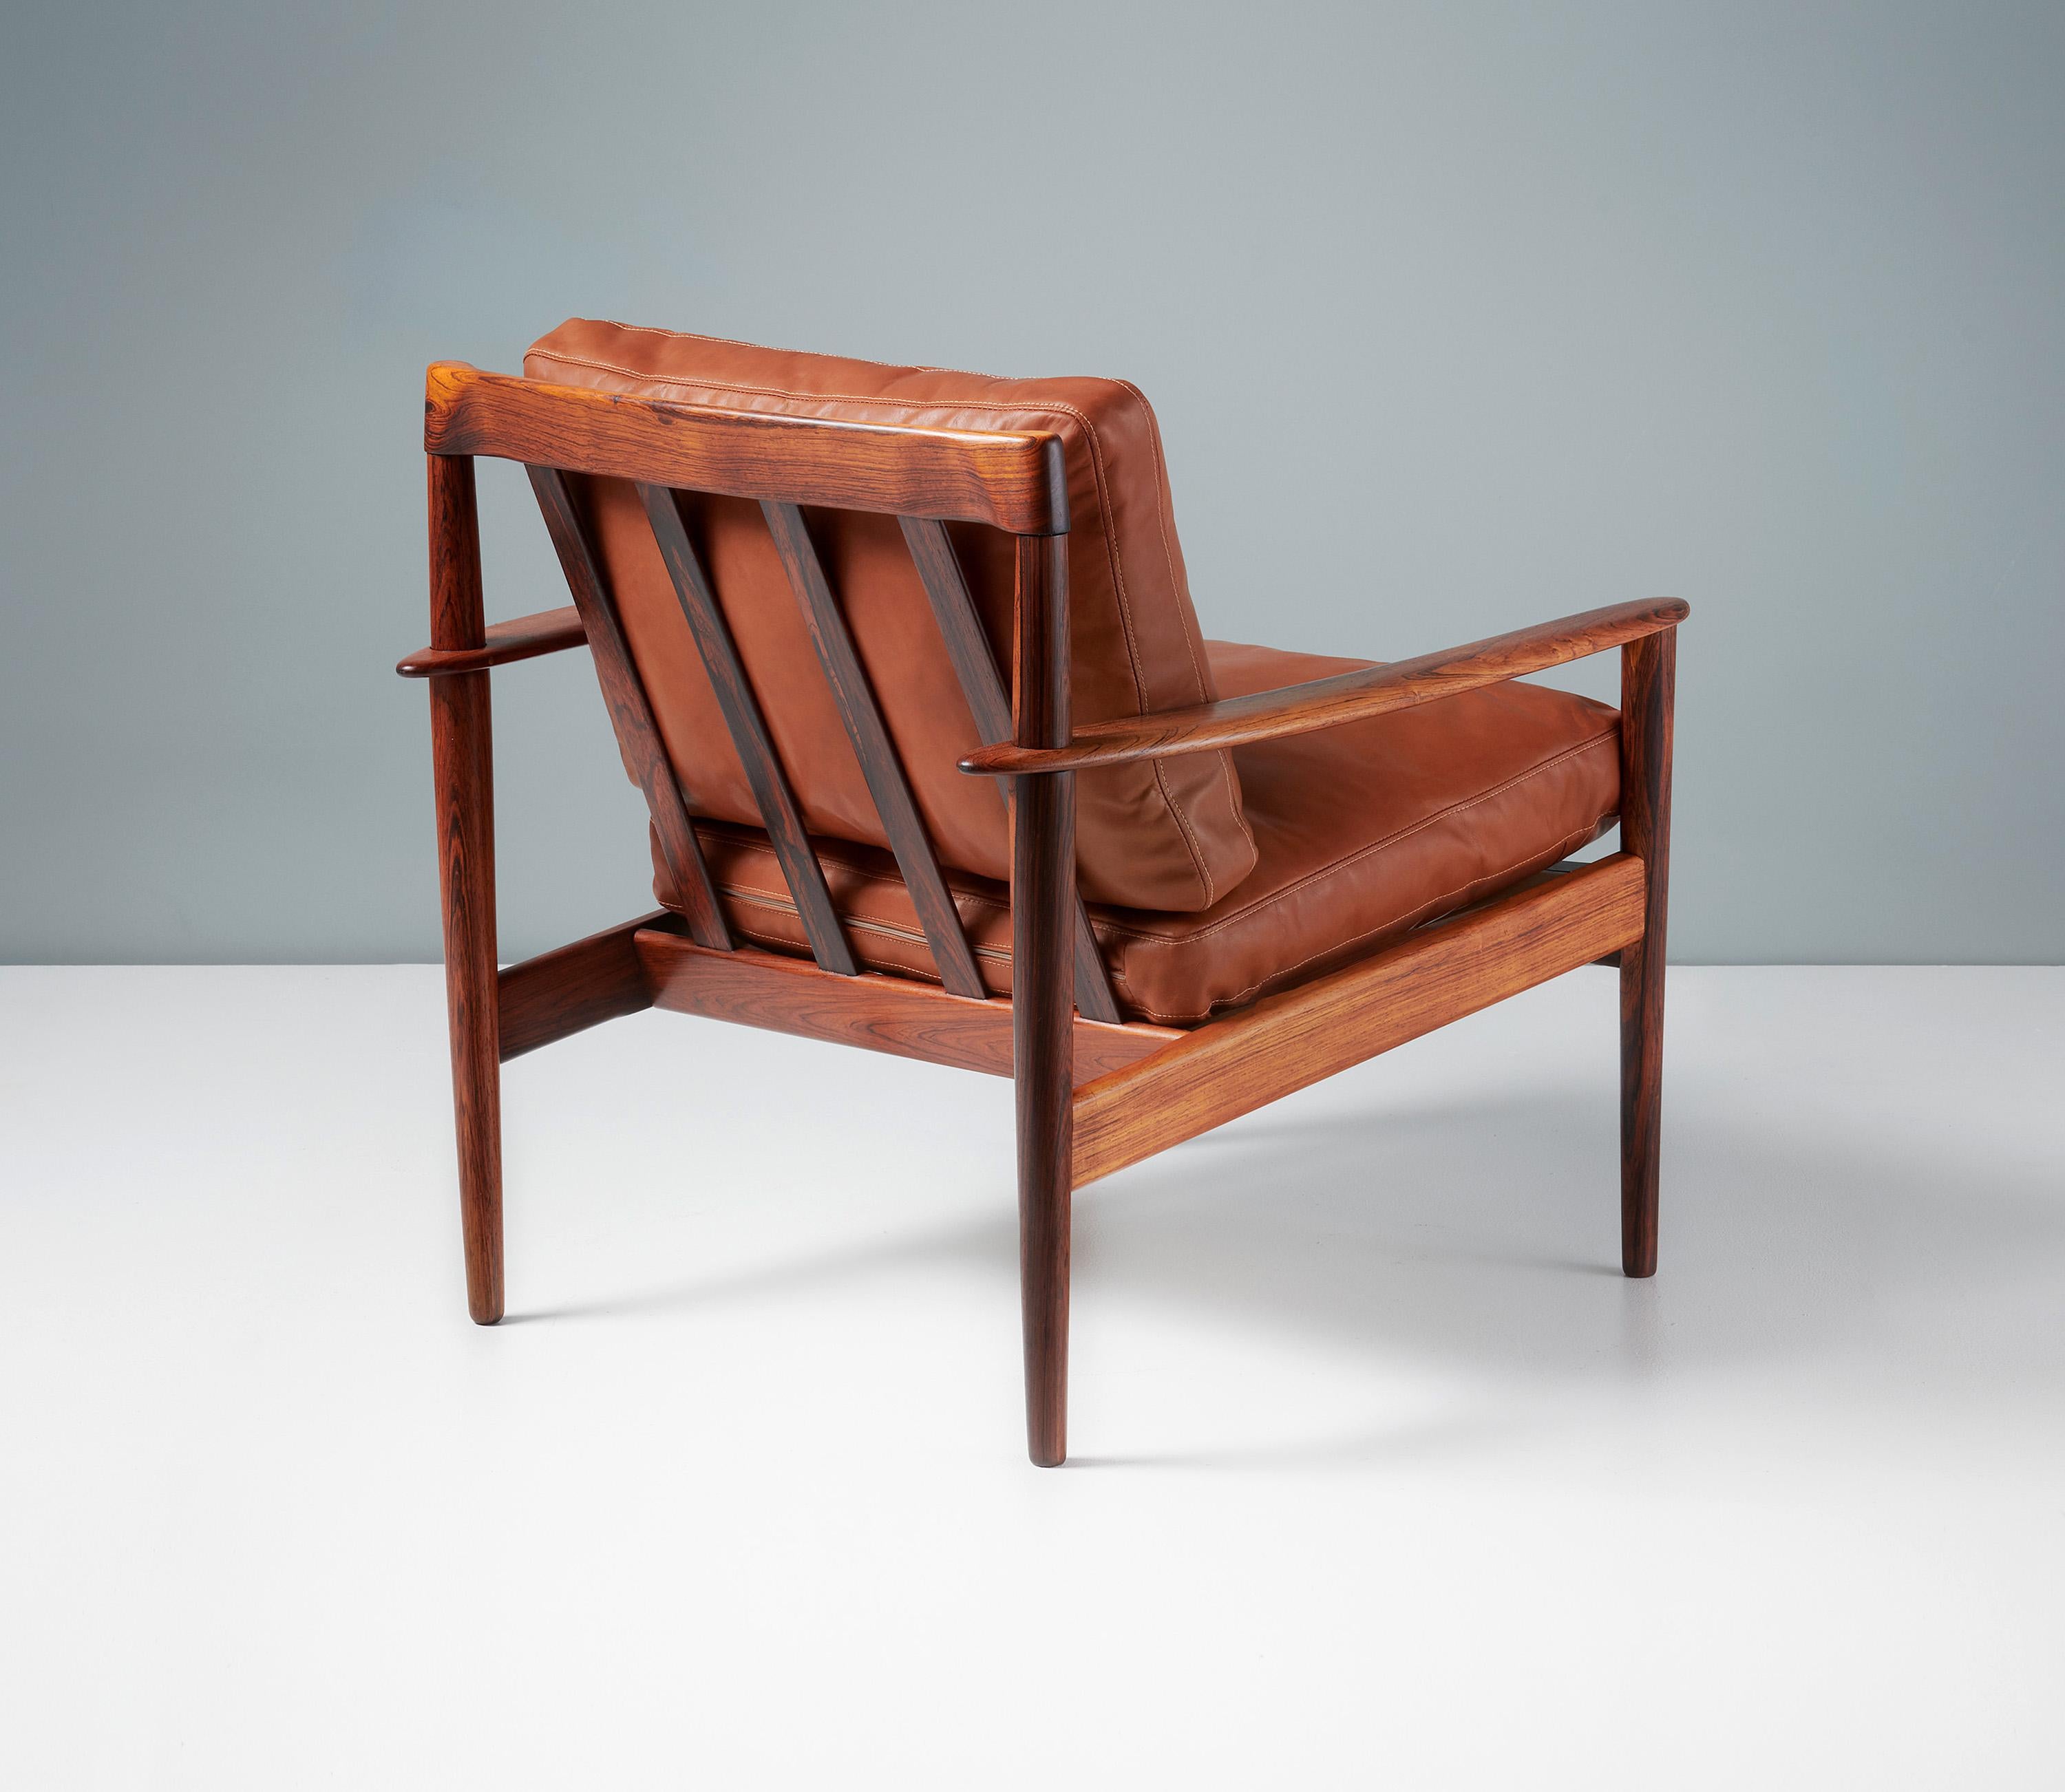 Chaise longue Grete Jalk modèle PJ-56

Magnifique chaise longue conçue par Grete Jalk pour l'ébéniste Poul Jeppesen au Danemark, vers 1956. Ces exemplaires sont en palissandre magnifique avec un grain particulièrement inhabituel et exotique. La